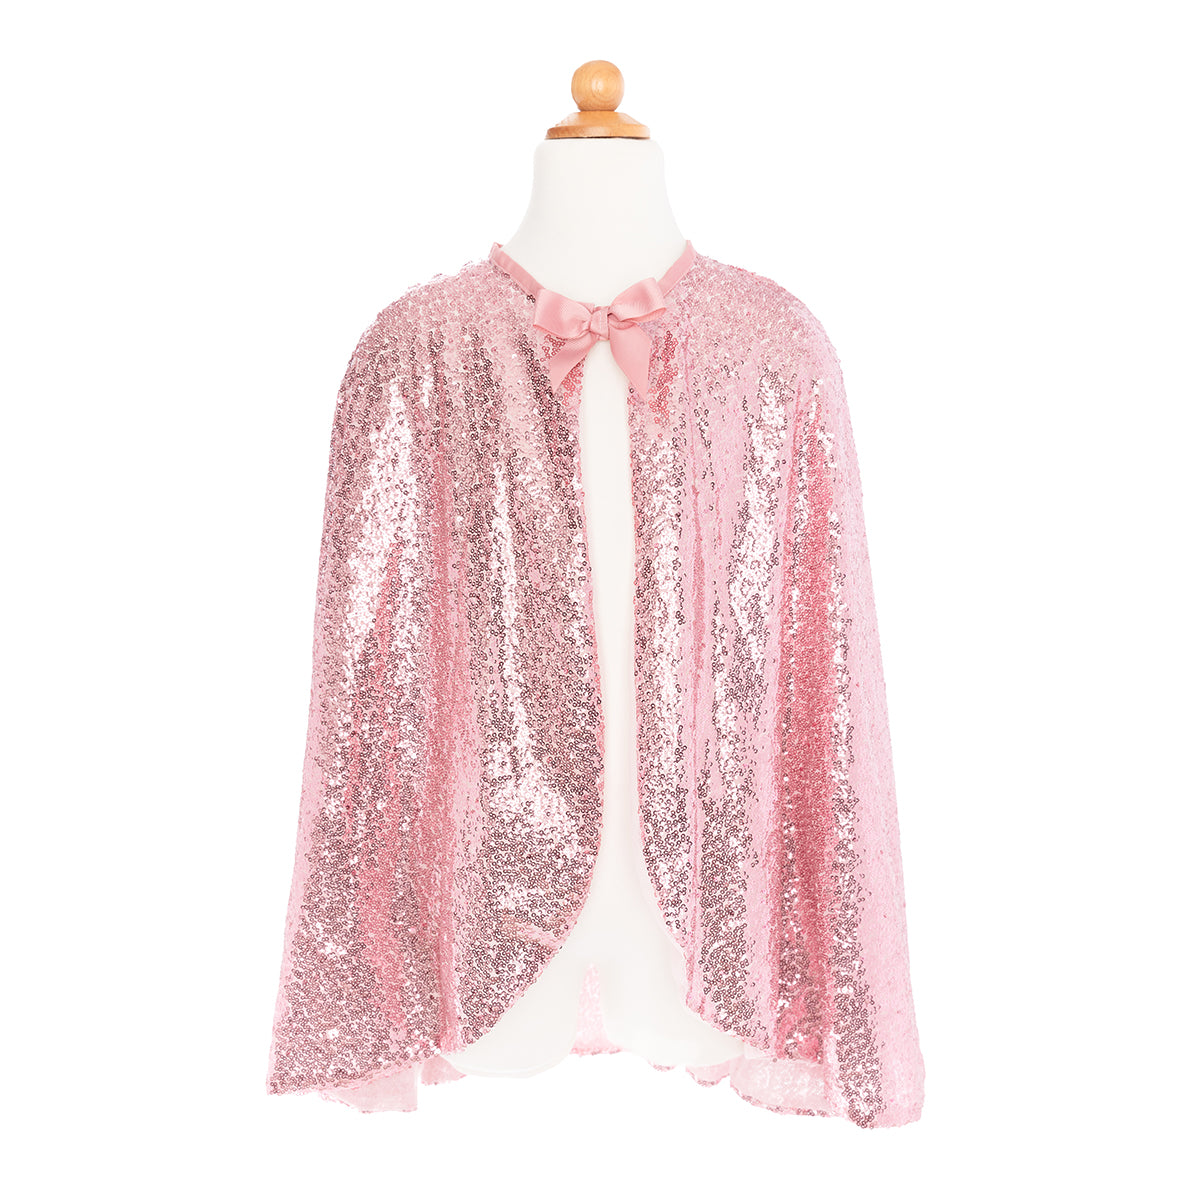 Maak je outfit als mooie prinses helemaal af met deze prachtige precious pink pailetten cape van het merk Great Pretenders. Met deze mooie cape om val je op en krijgt je outfit een koninklijke flair. VanZus